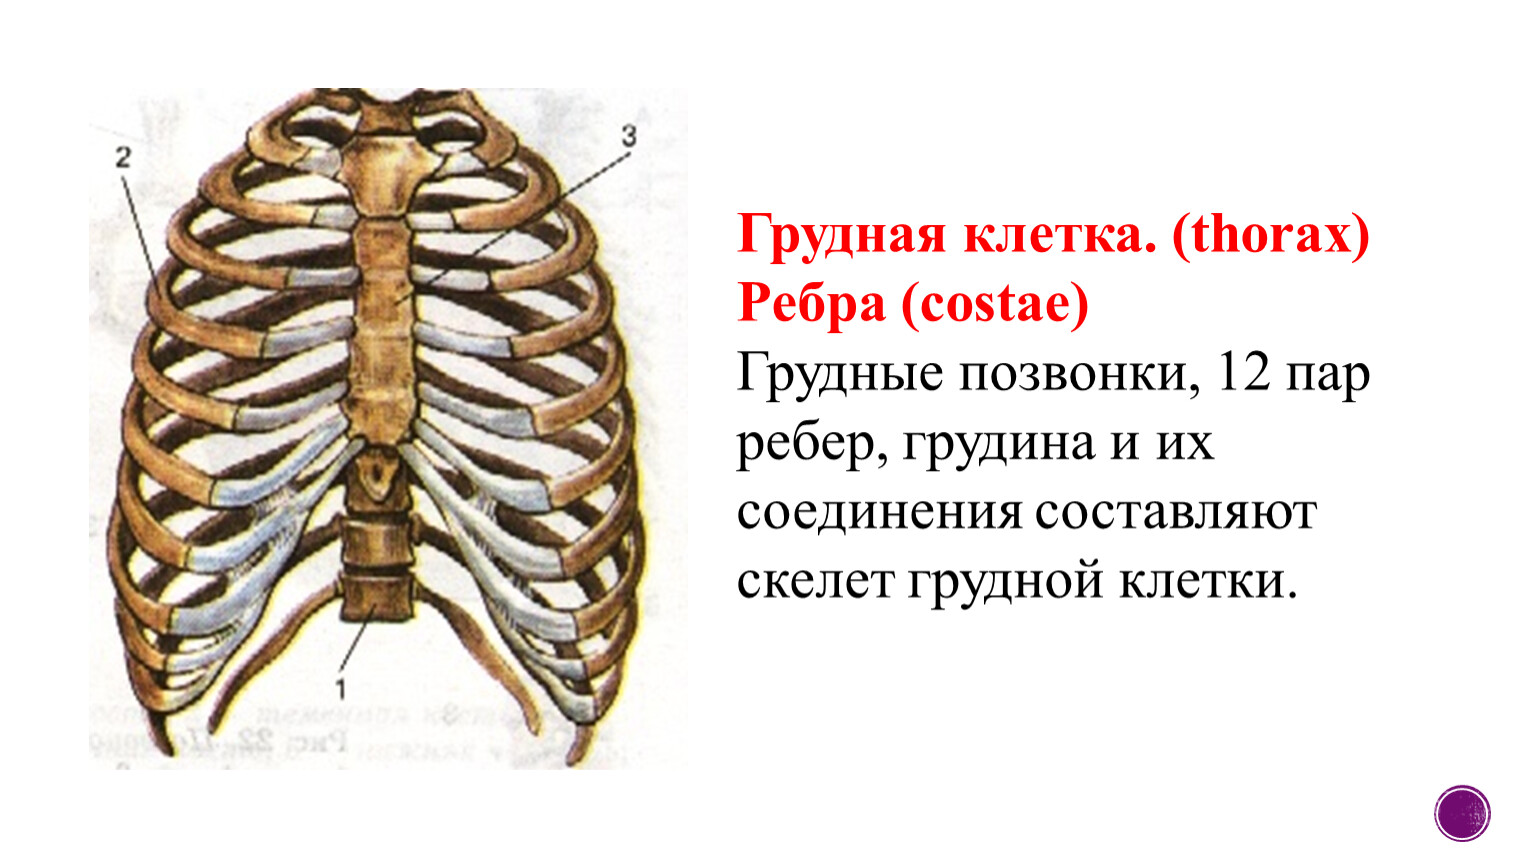 Может ли в цепи ребер. Кости грудной клетки анатомия. Анатомия ребер грудной клетки. Анатомия скелет грудной клетки ребра Грудина. Анатомия человека грудная клетка ребра.